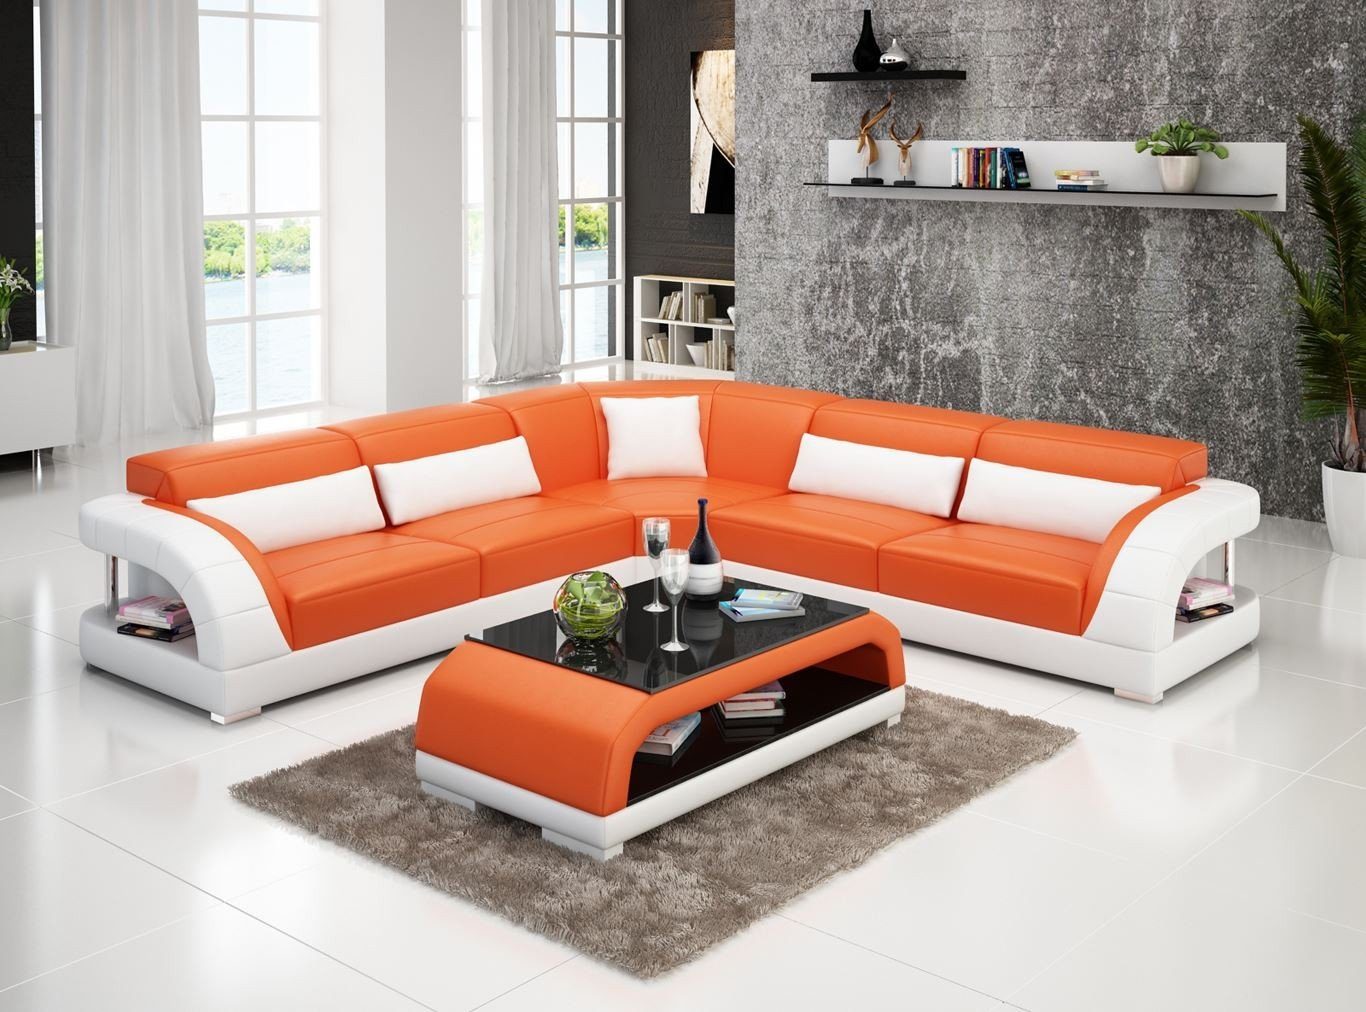 JVmoebel Ecksofa Couch Ecksofa Leder Orange/Weiß Made Modern, Garnitur Design in Wohnlandschaft Europe